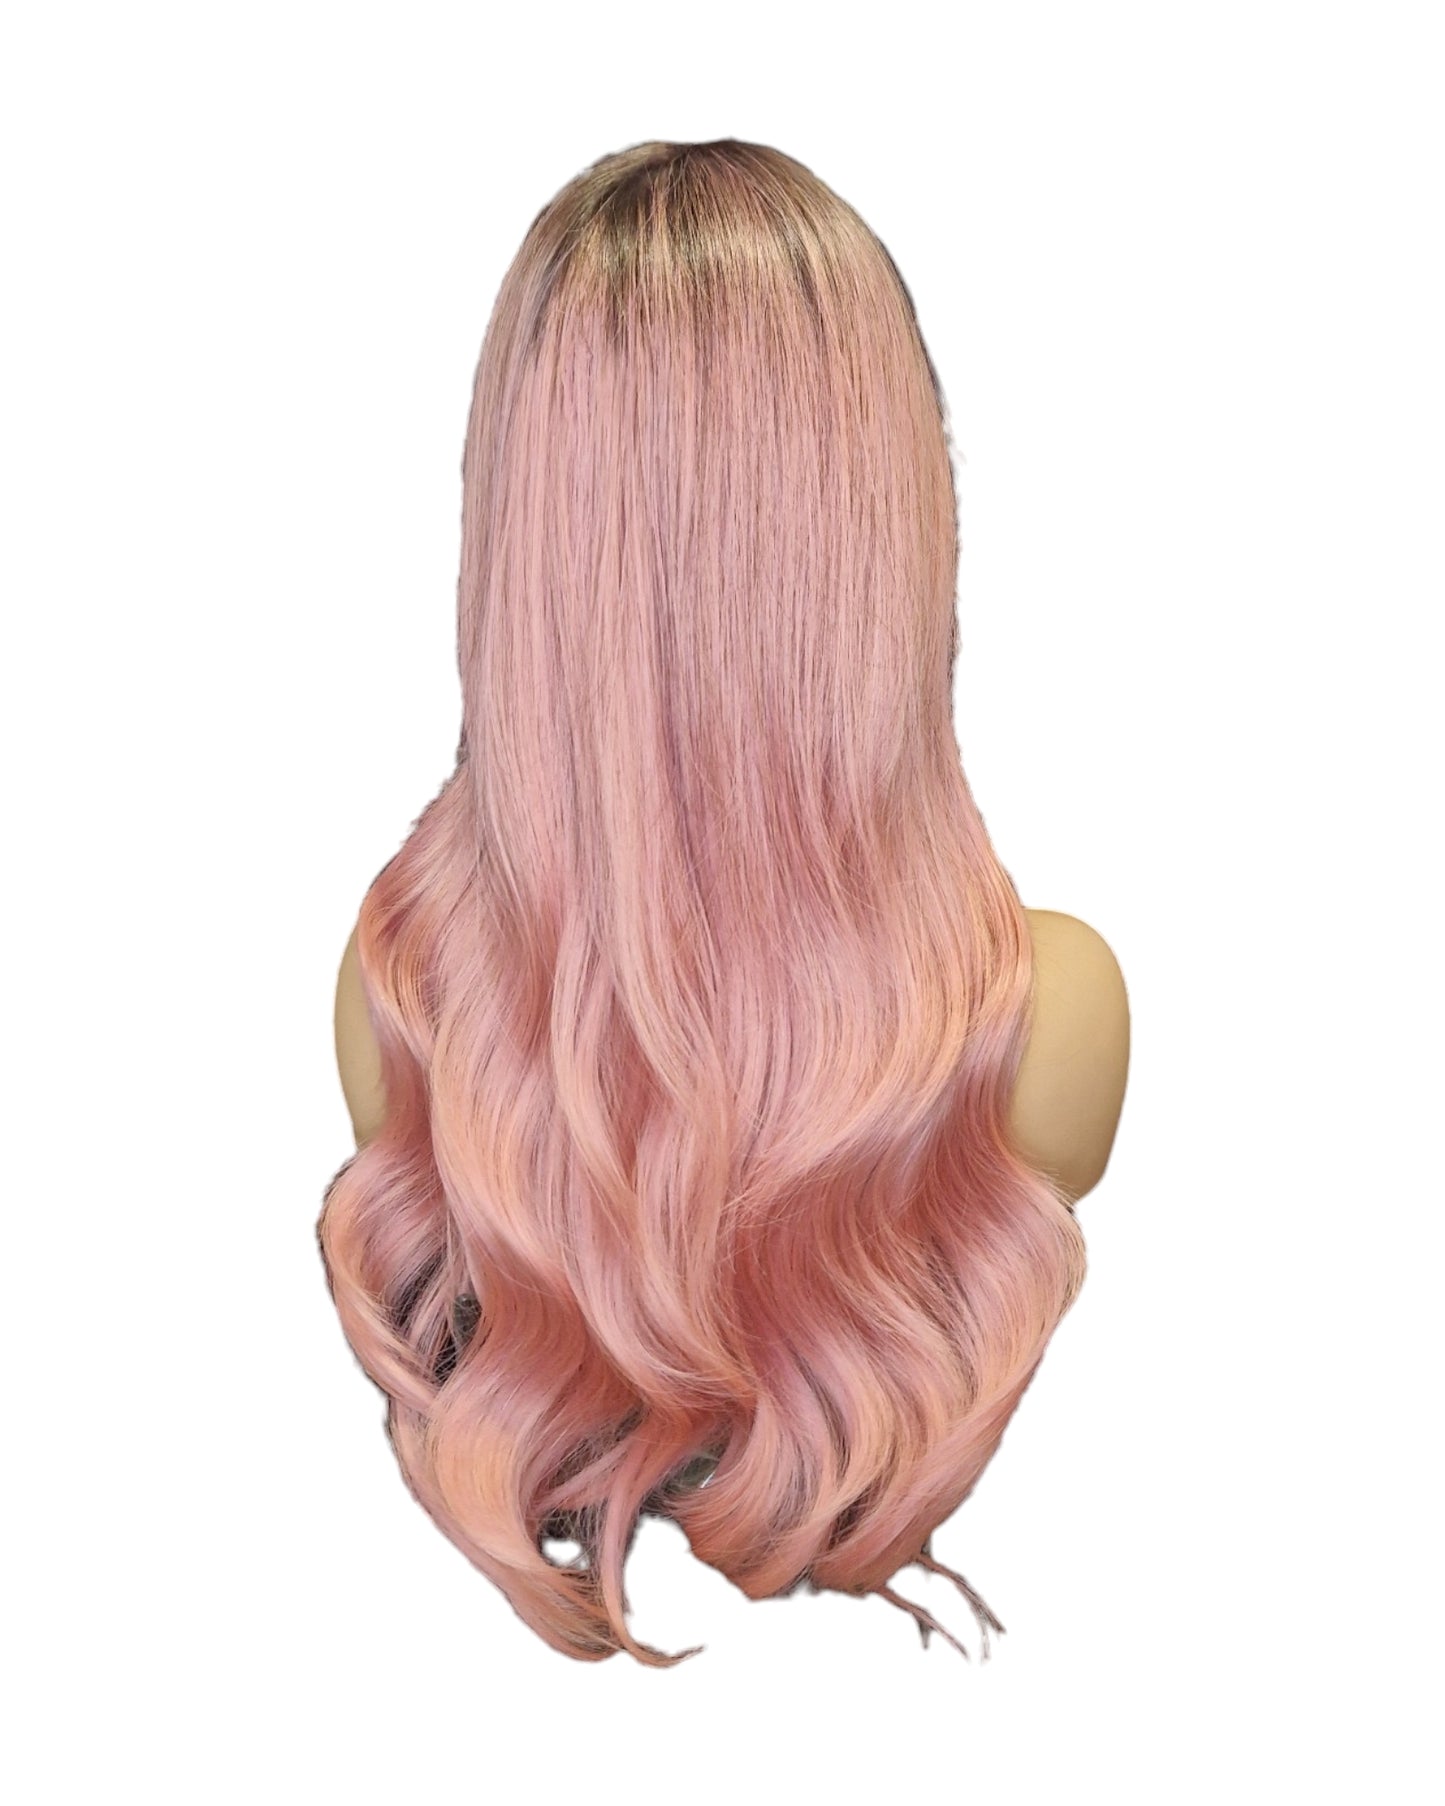 Pastel Pink Long Wavy Wig. Sakura